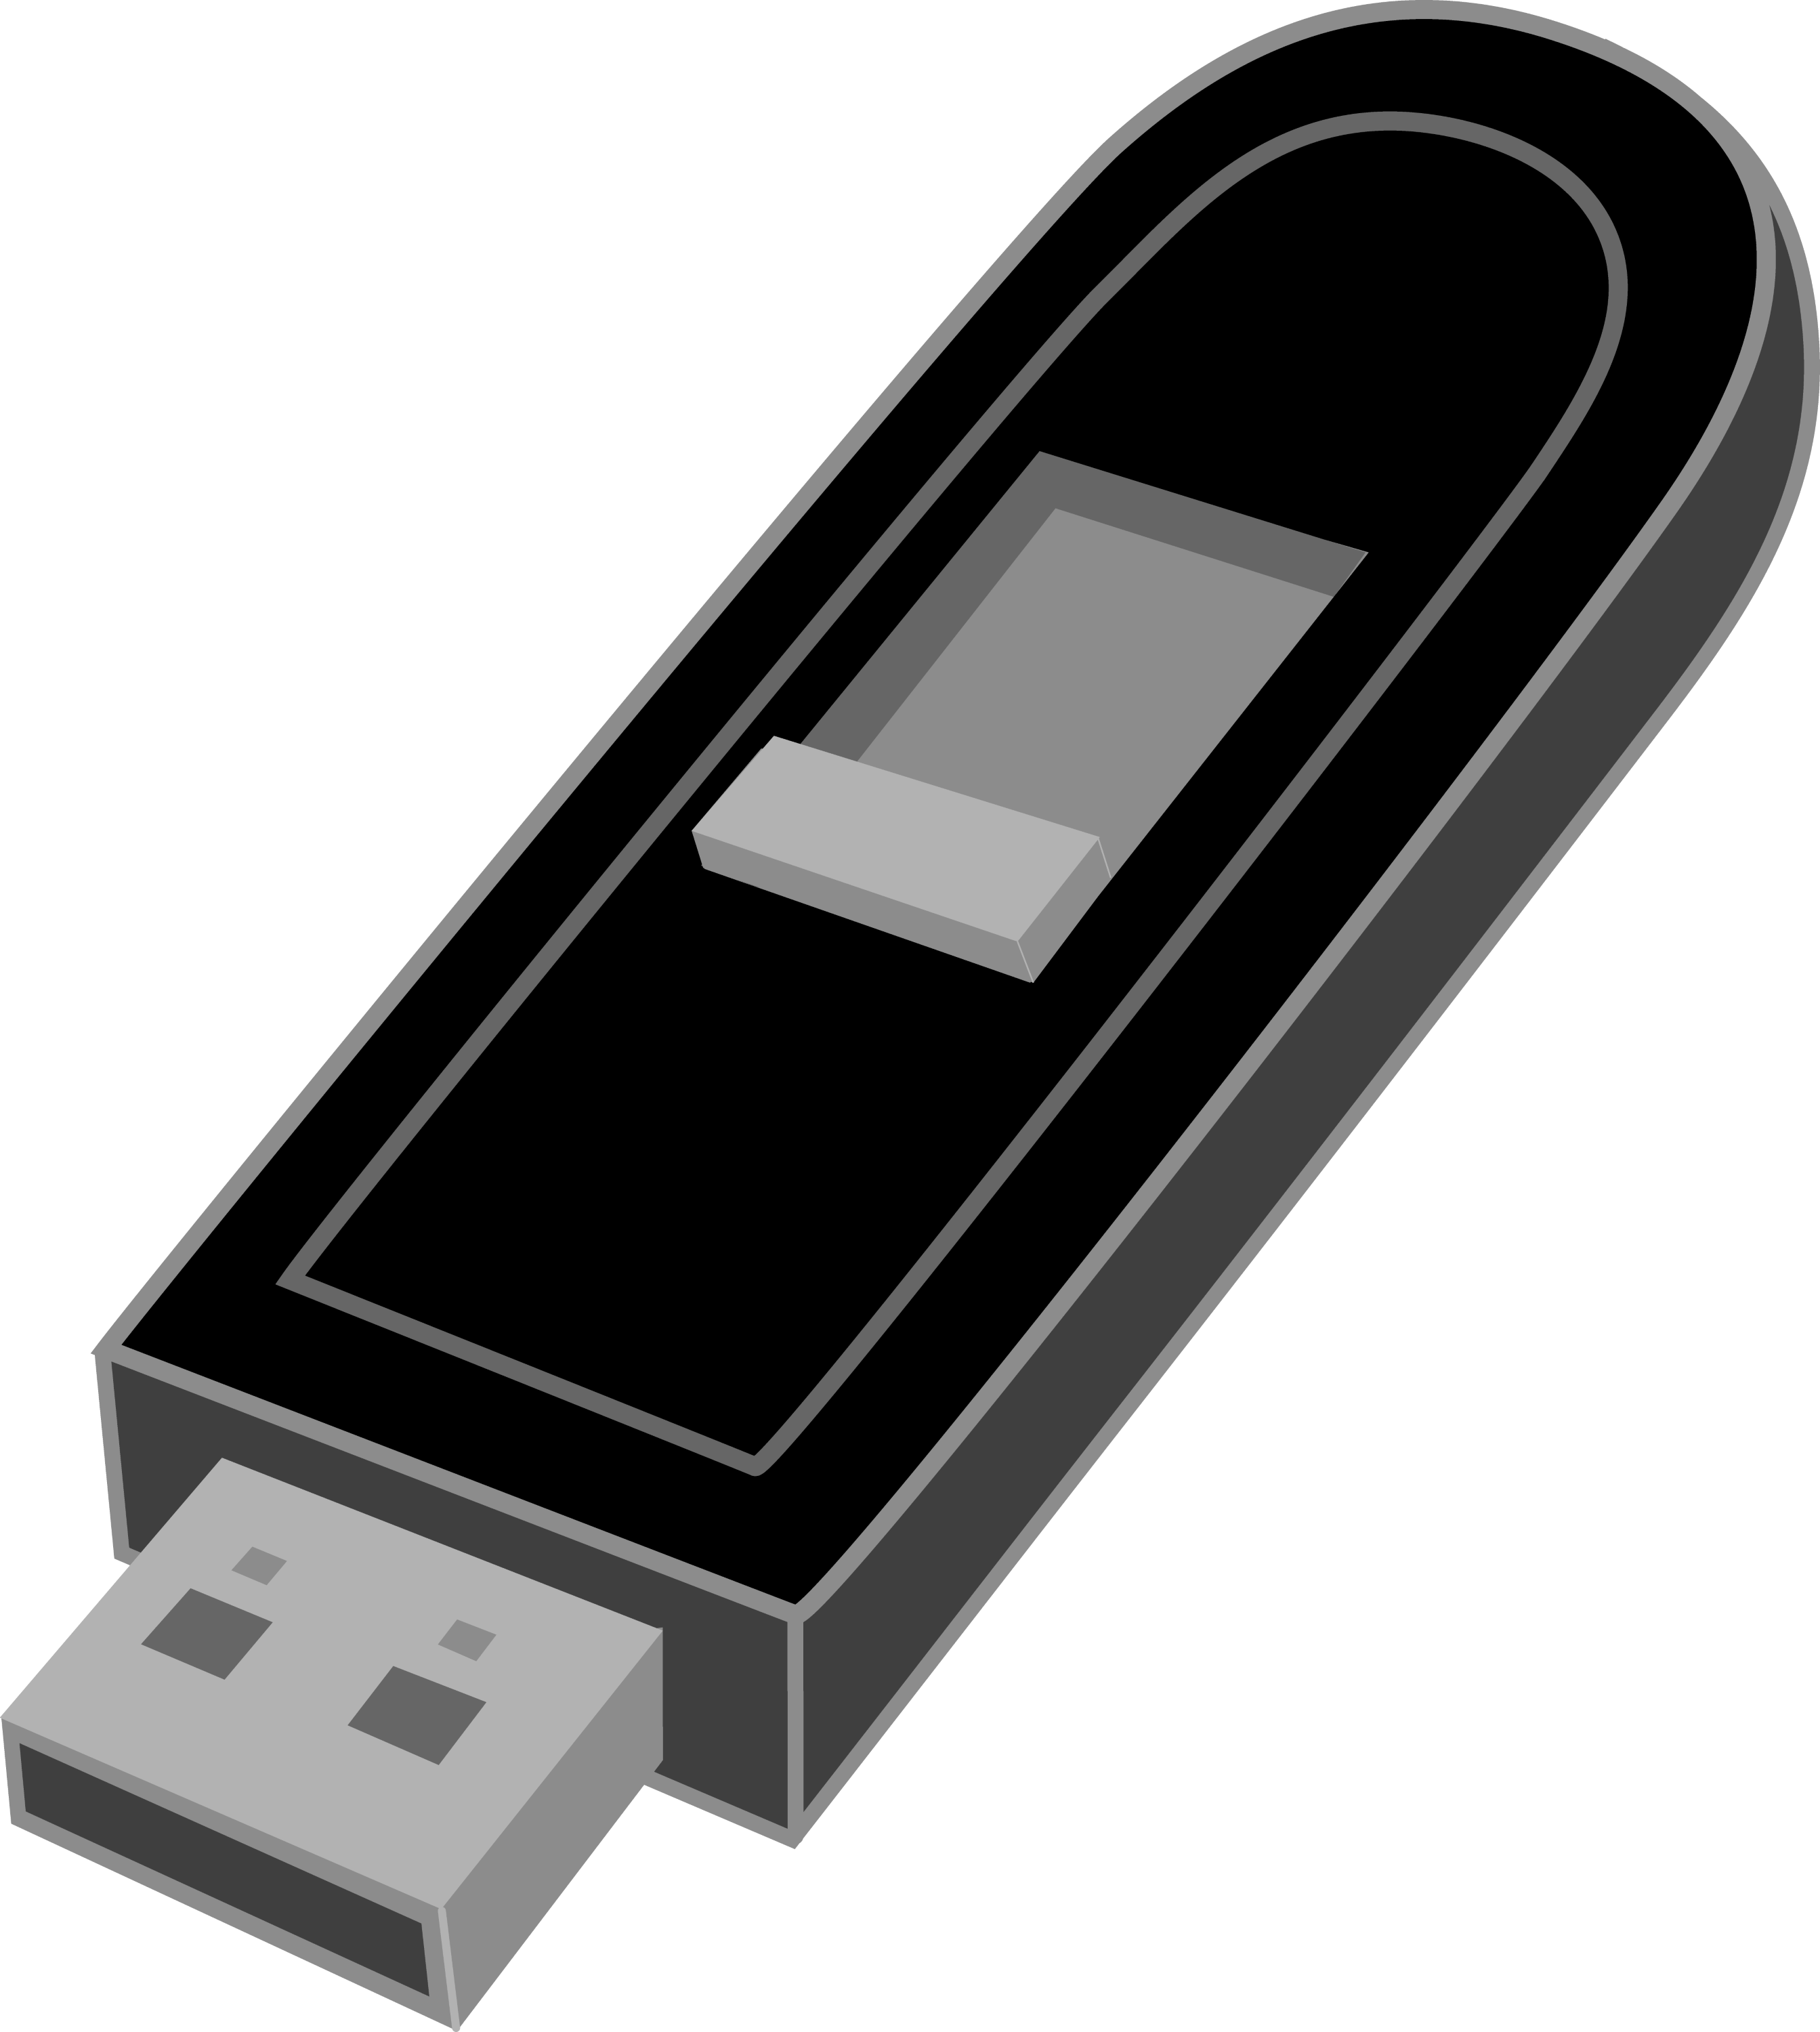 Black USB Flash Drive - Free Clip Art